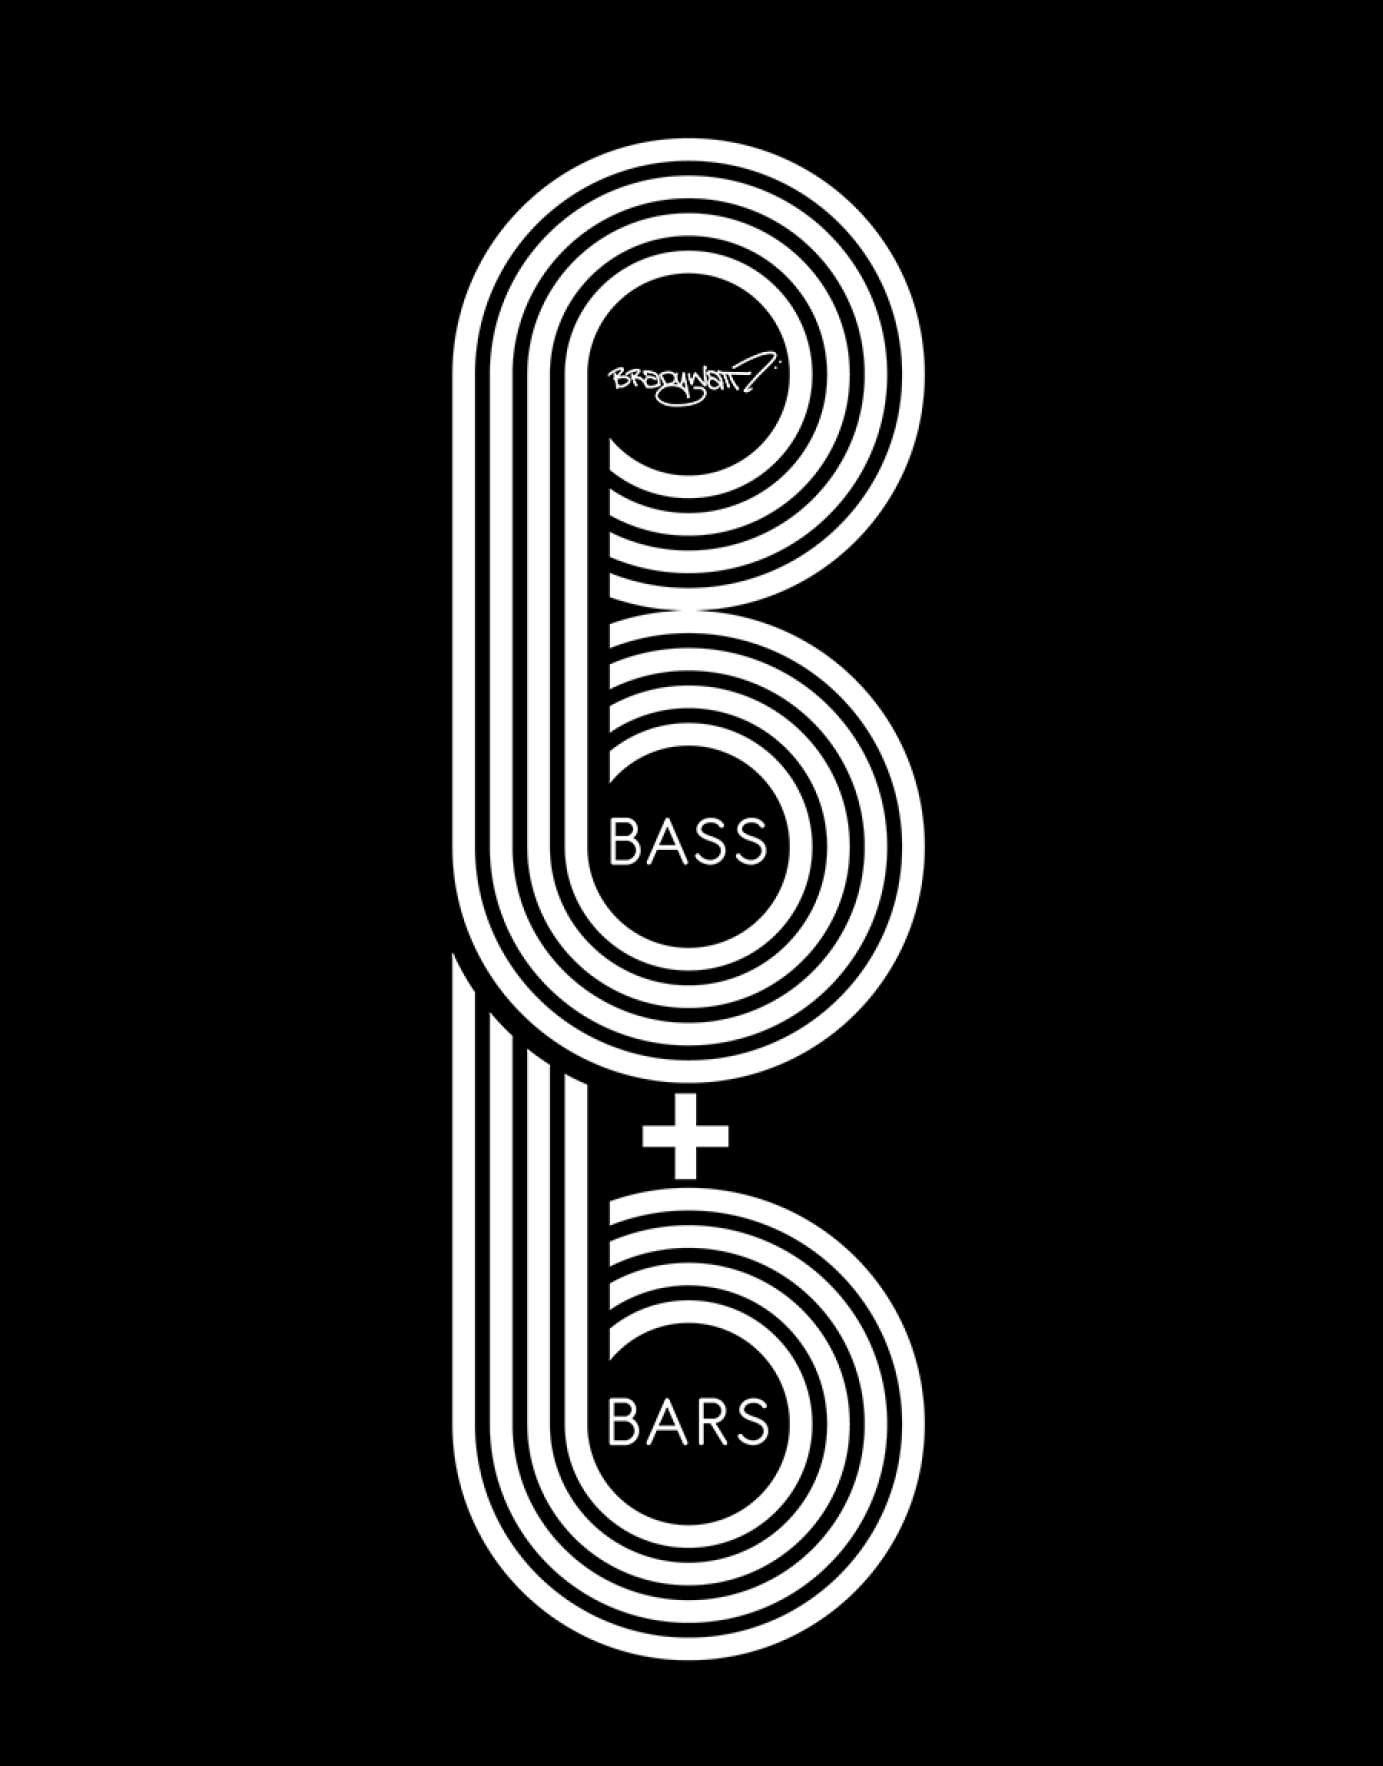 Bass + Bars Logo Design/Merchandise